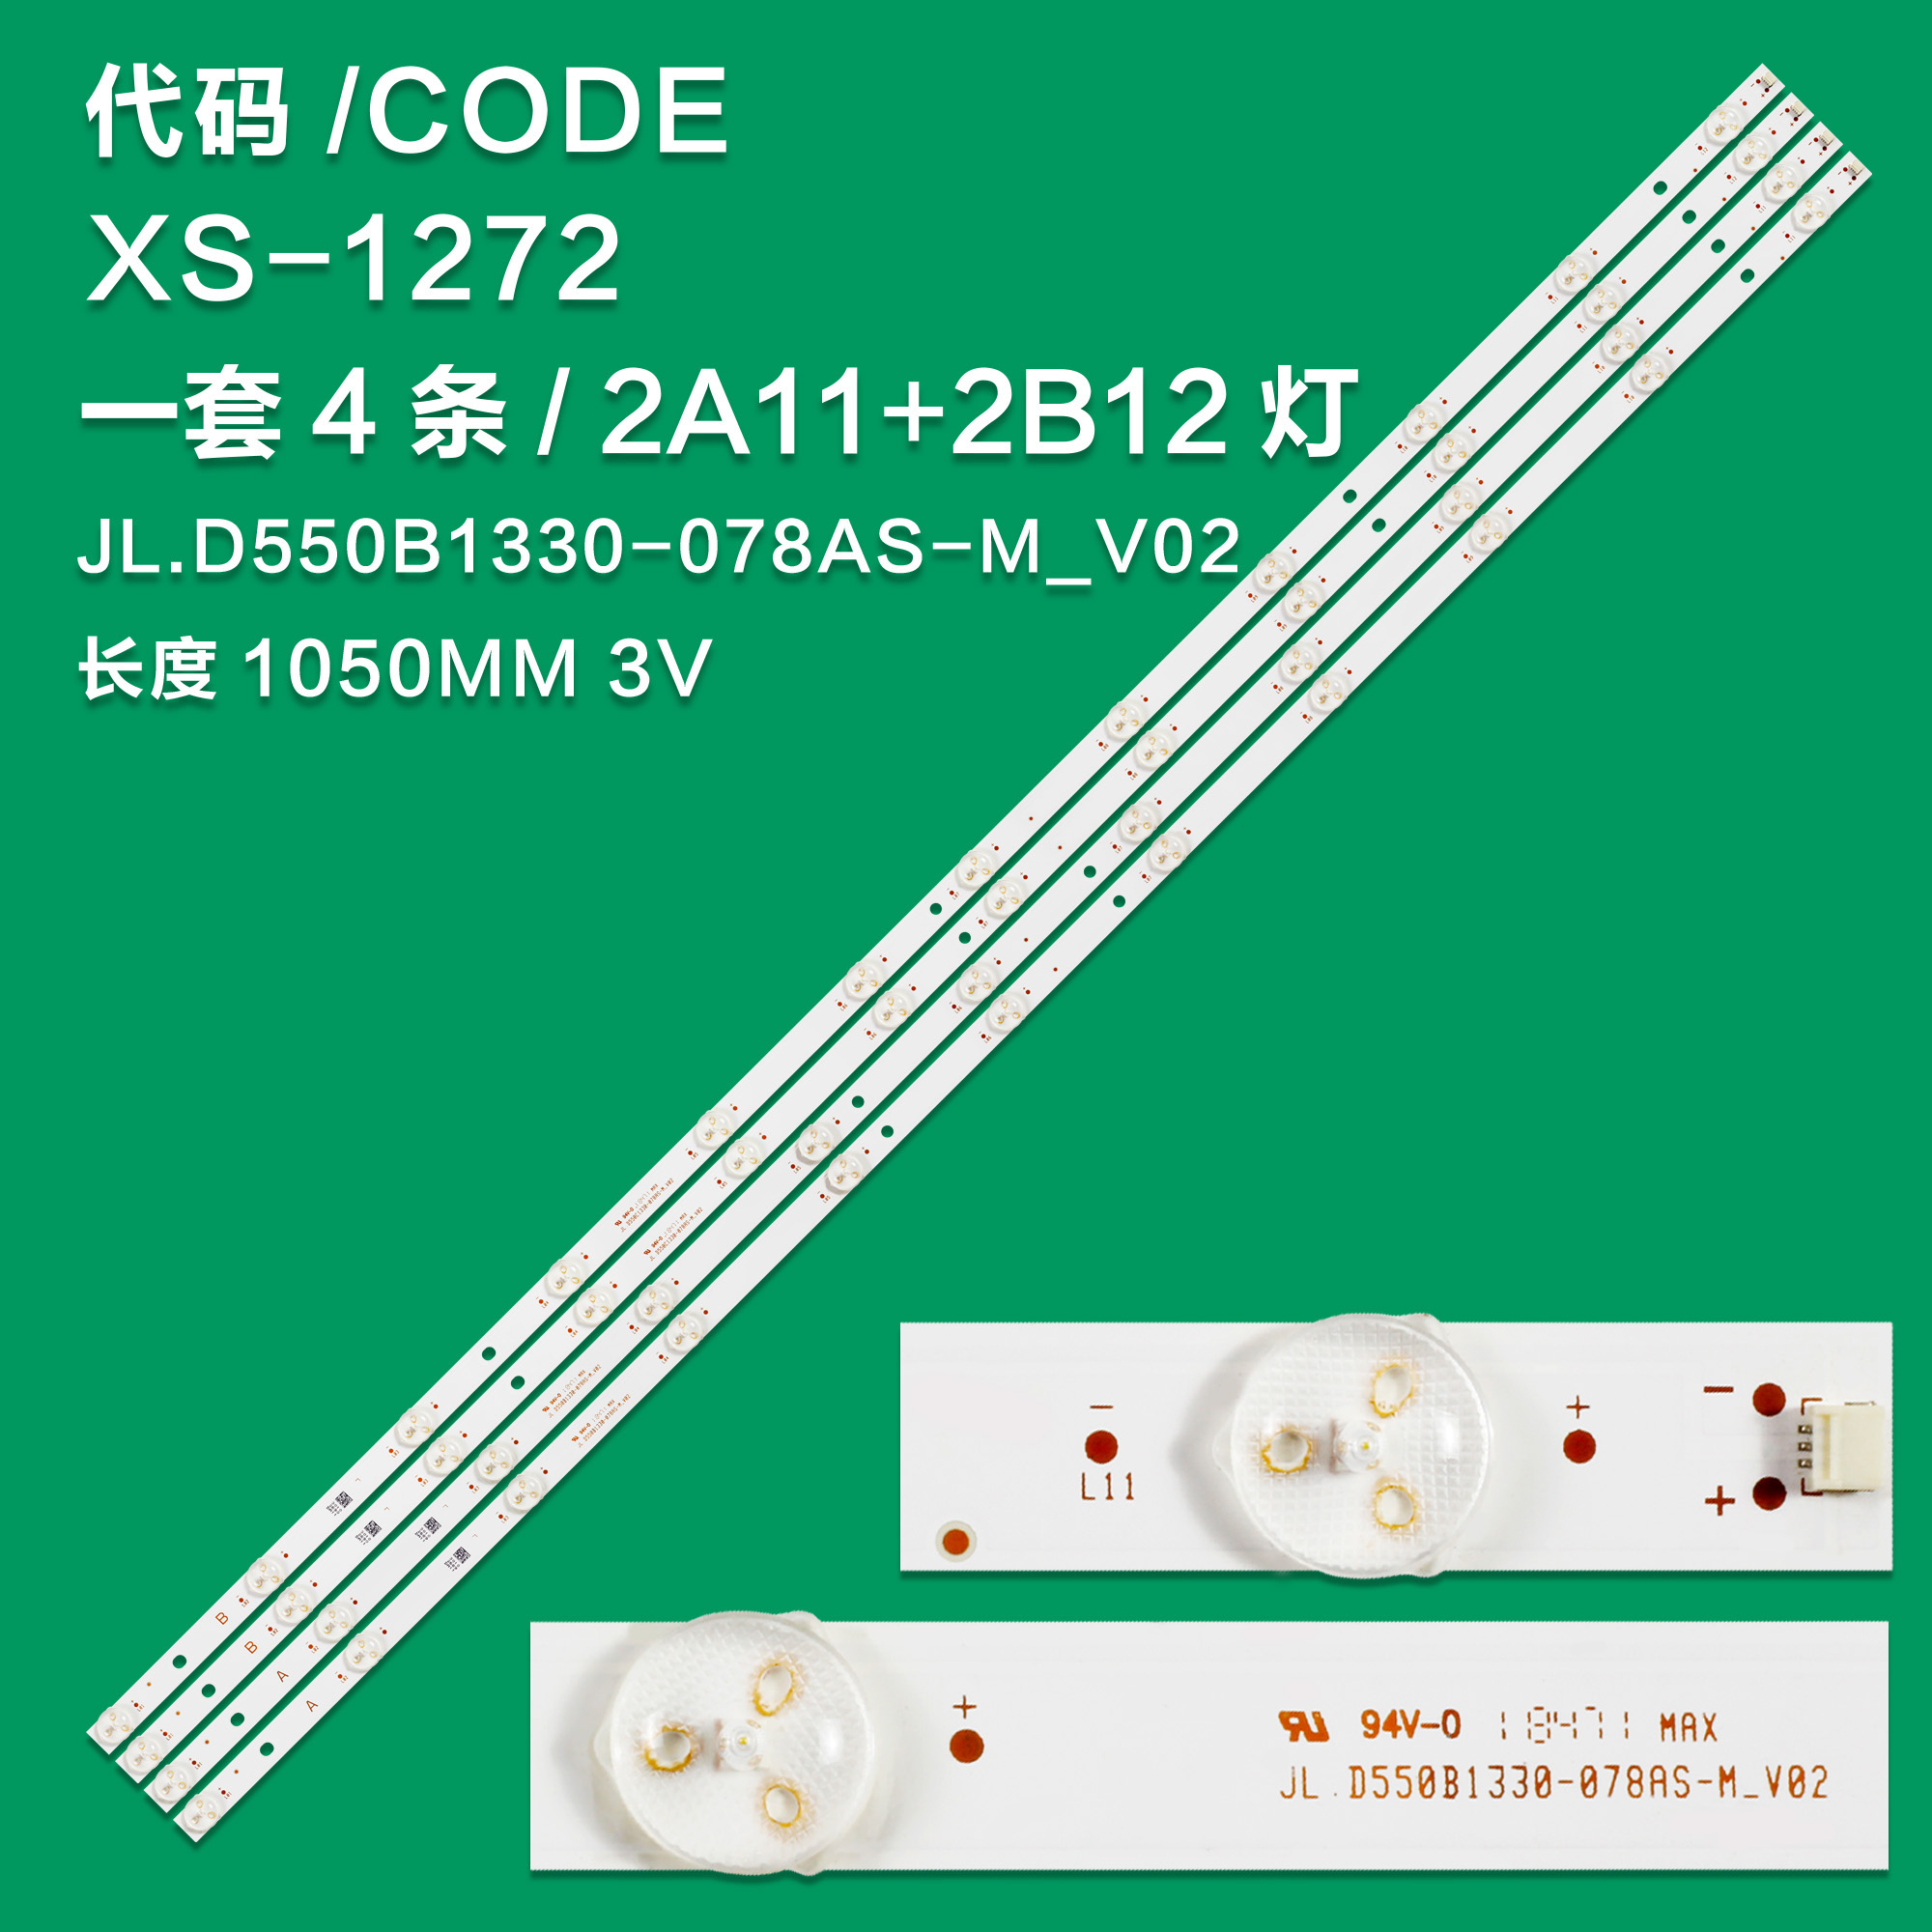 XS-1272 New LCD TV Backlight Strip 17DLB55NER4-A/17DLB55NER4-B  ET1 For Toshiba 55HK6100U 55HL7530U